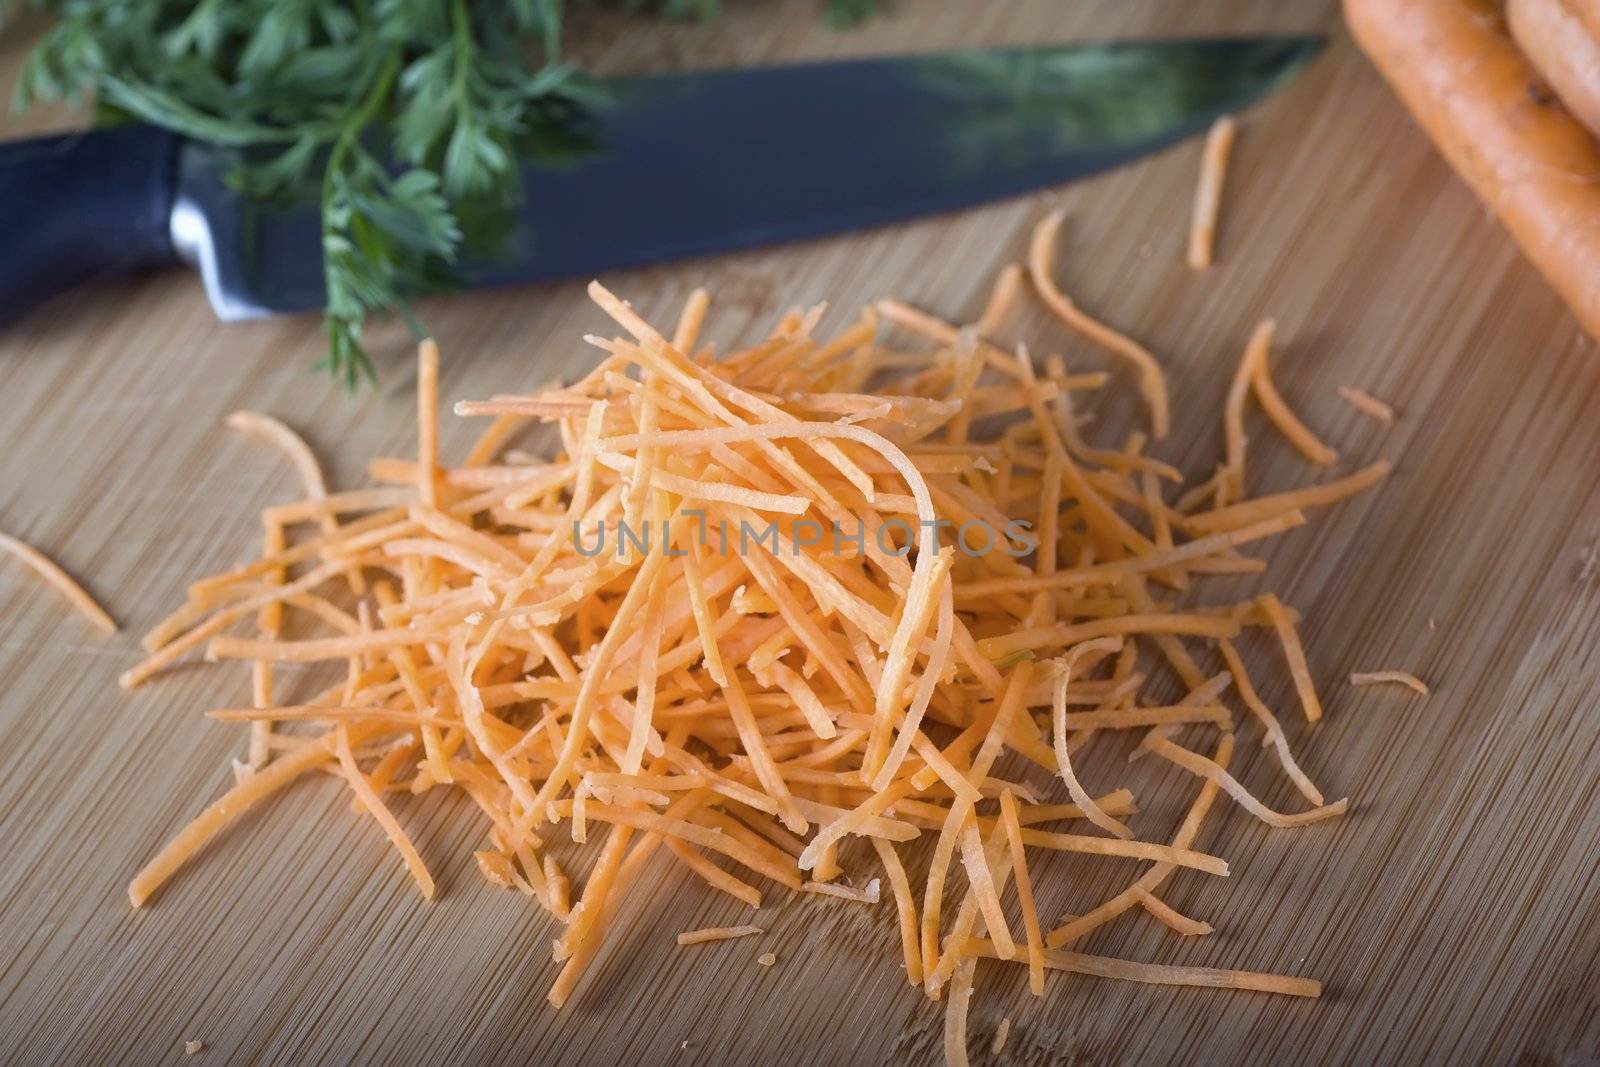 Shredded Carrots by charlotteLake